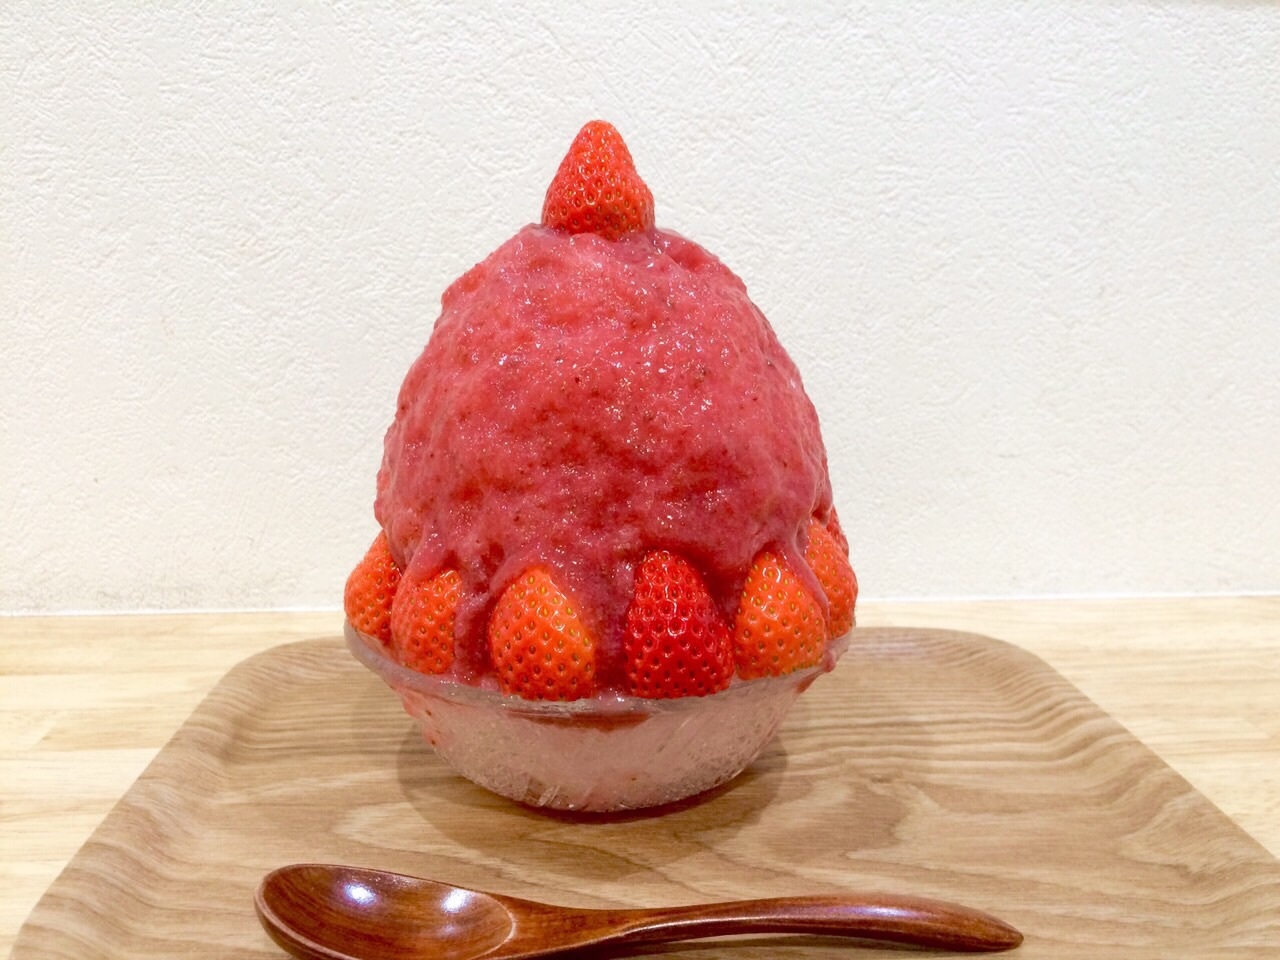 この季節だからこそ食べたい、ピンクのかき氷♡かき氷工房 雪菓の春限定メニュー”SAKURA”🍧🌸